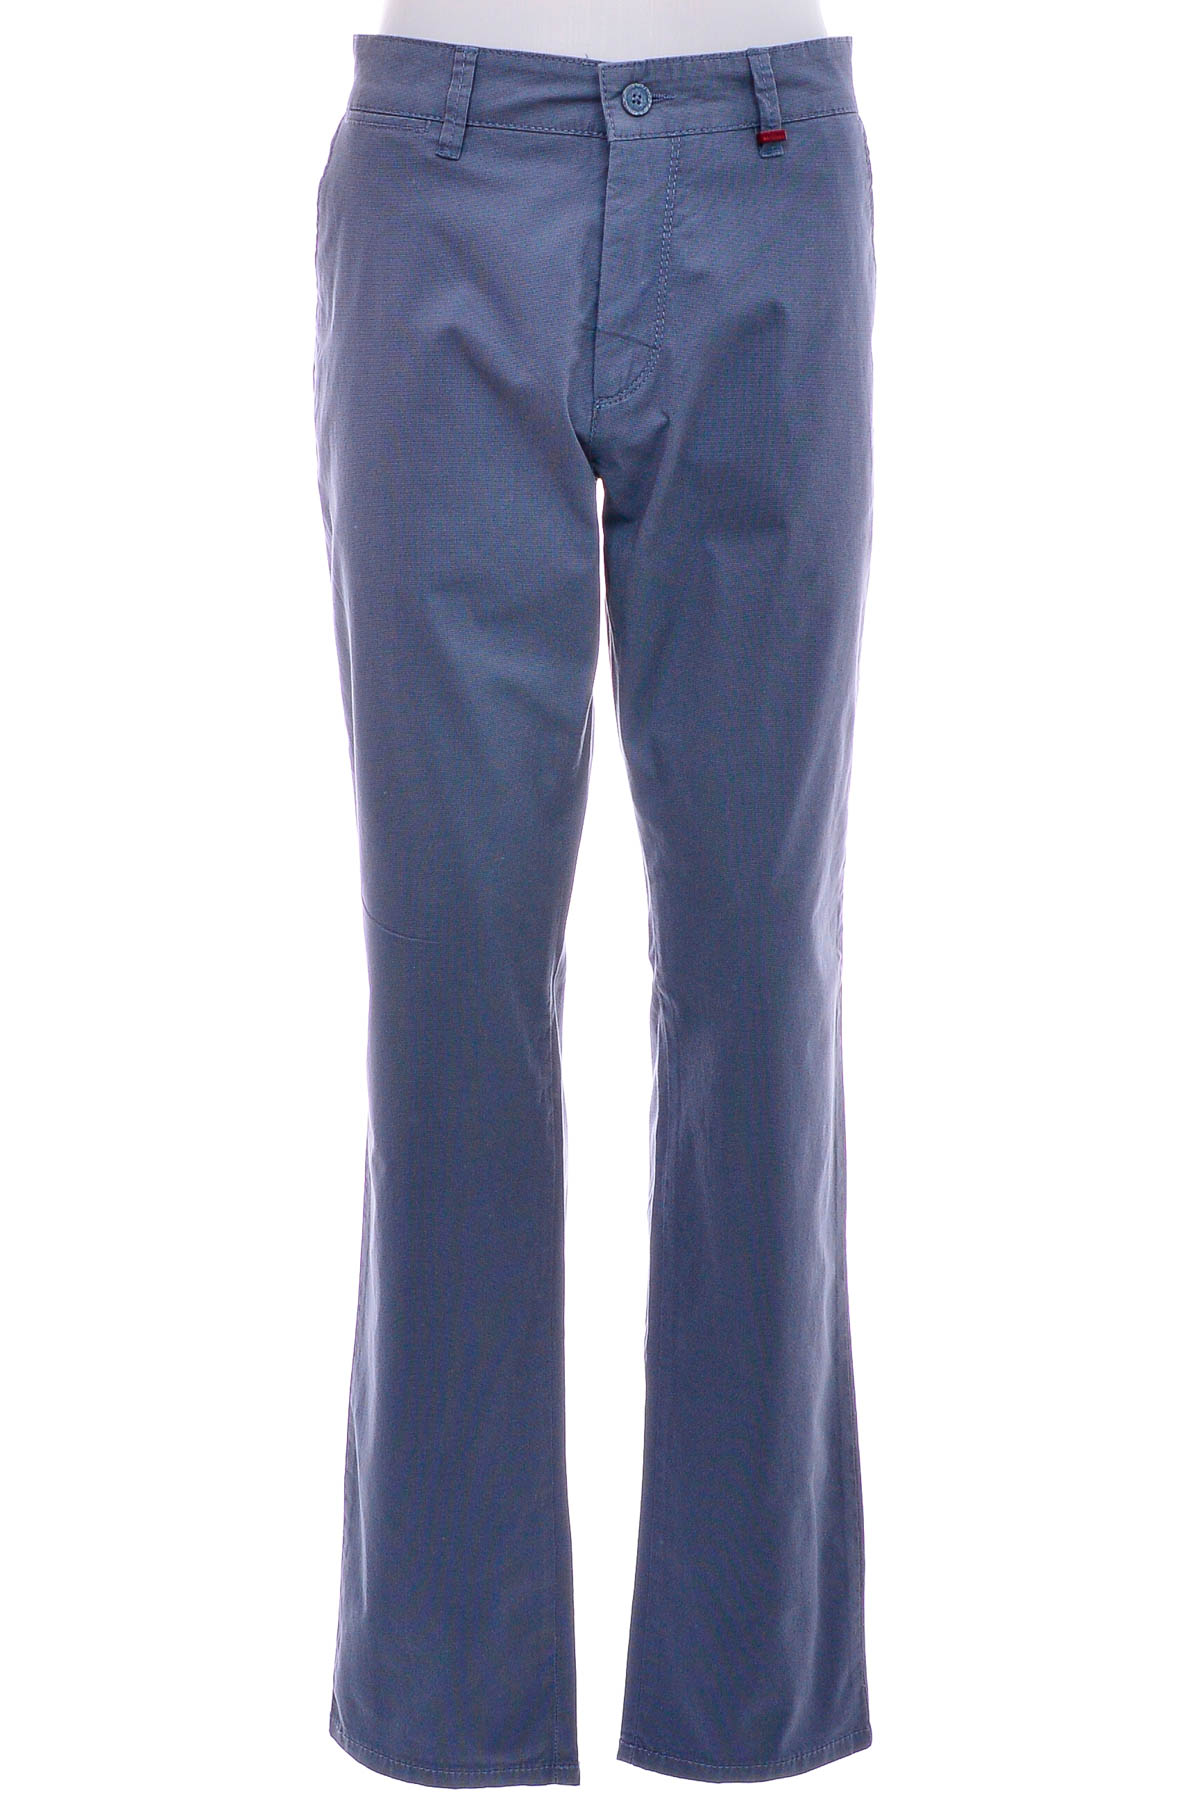 Men's trousers - MAC Jeans - 0